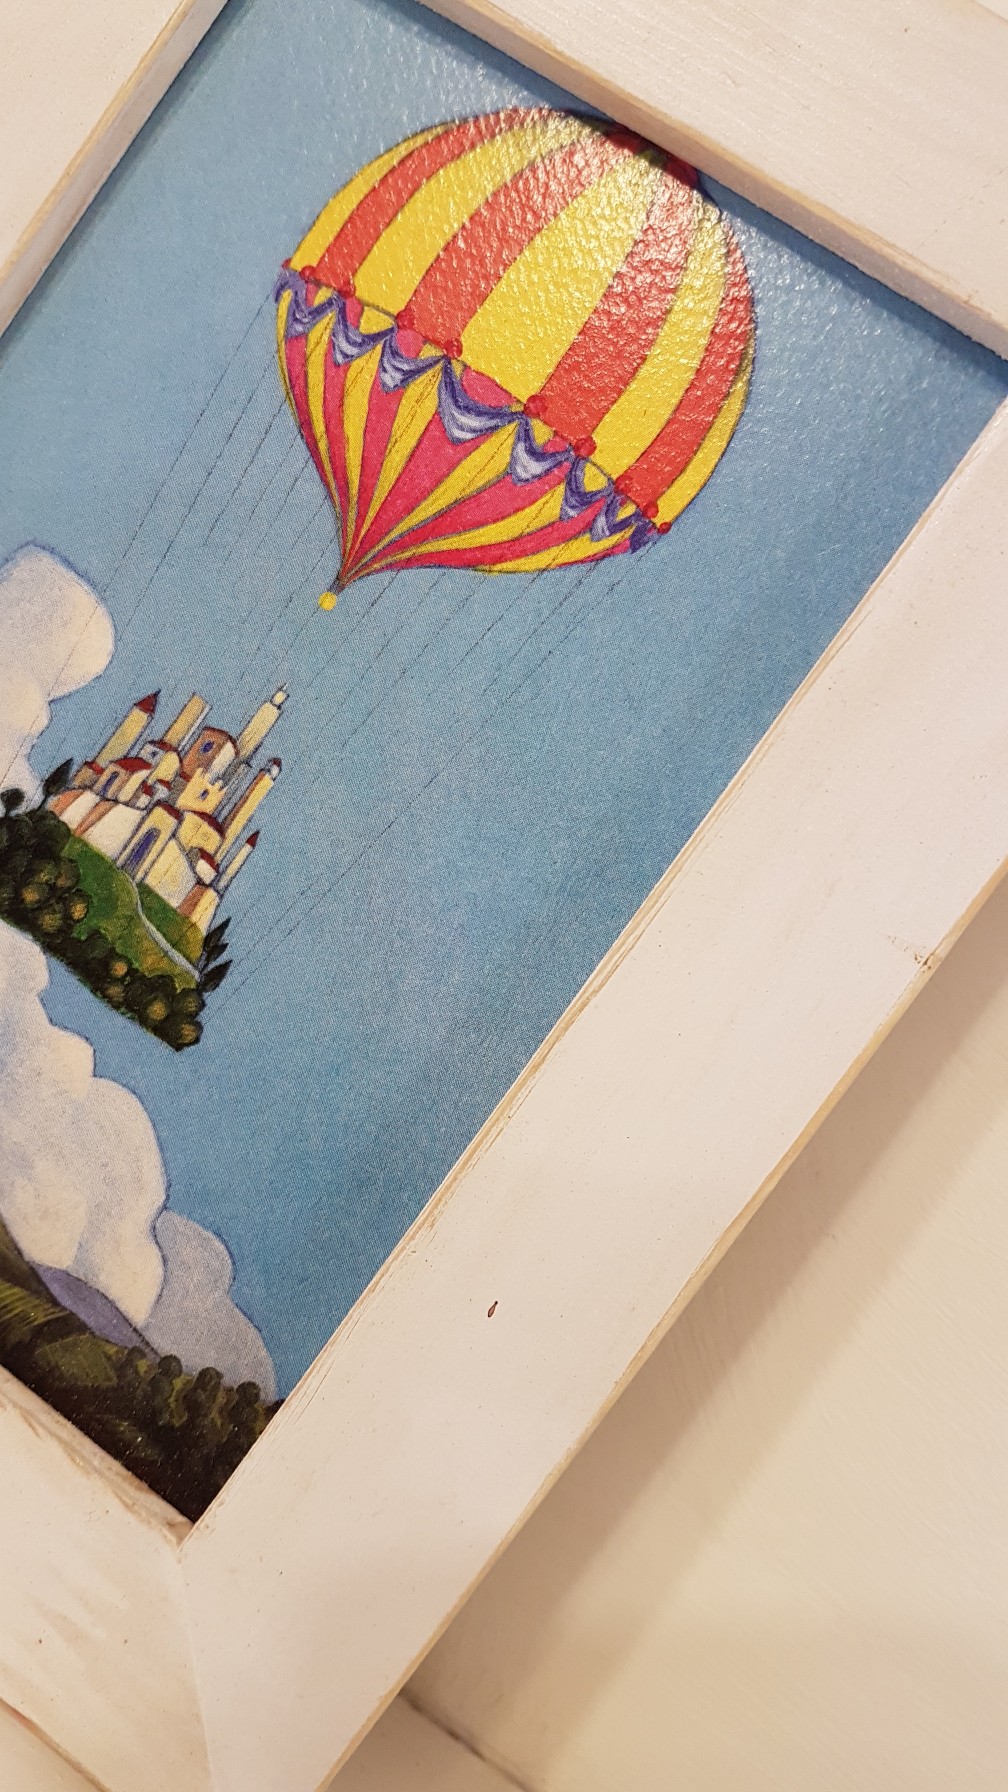 Il viaggio del paese in mongolfiera con cornice, the journey  of the village in the ballon with fram